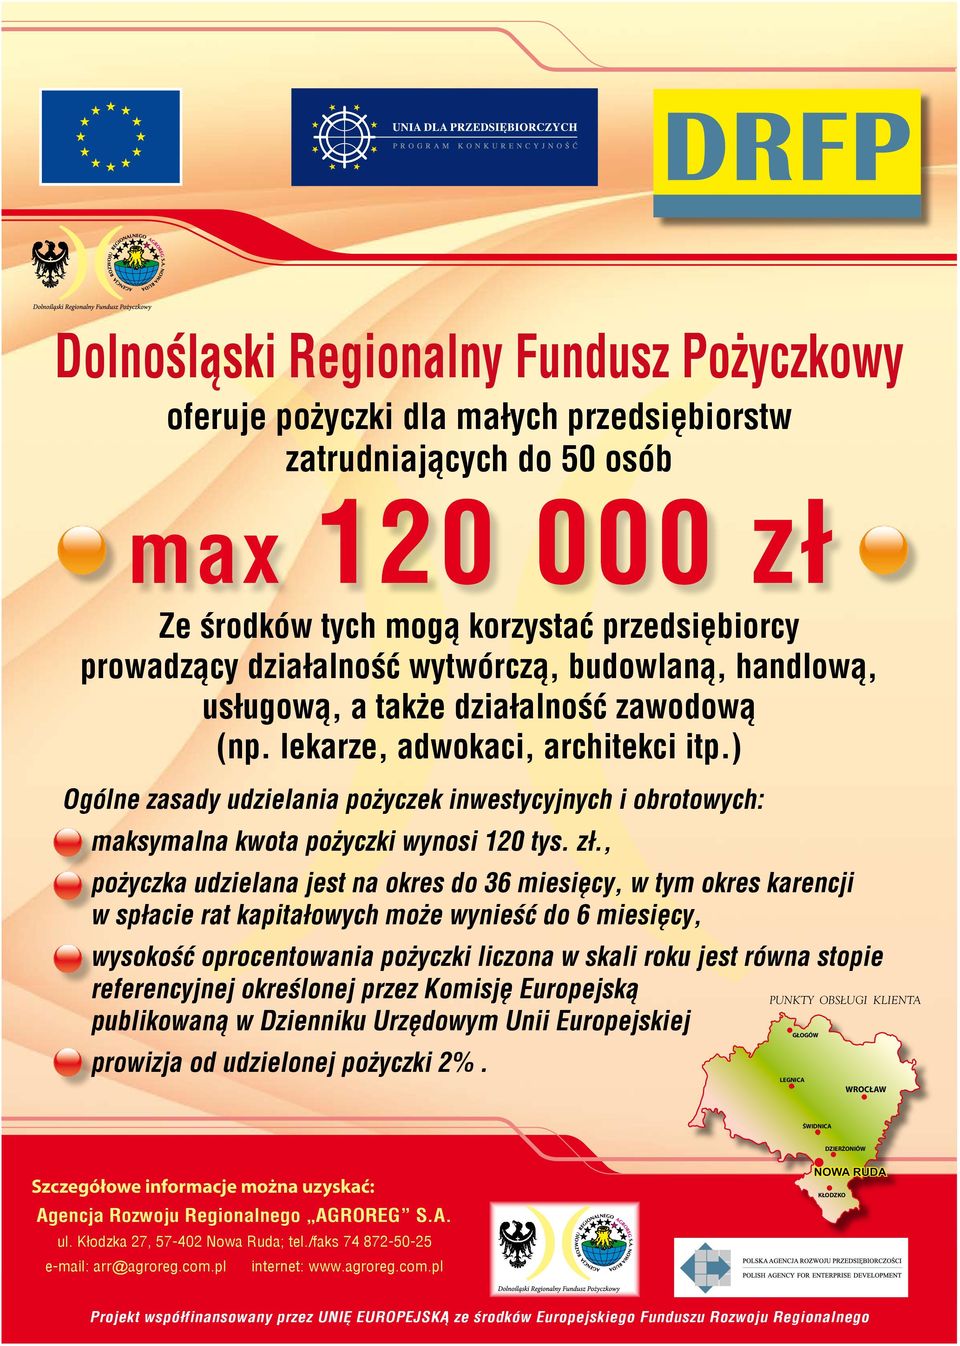 ) Ogólne zasady udzielania pożyczek inwestycyjnych i obrotowych: maksymalna kwota pożyczki wynosi 120 tys. zł.